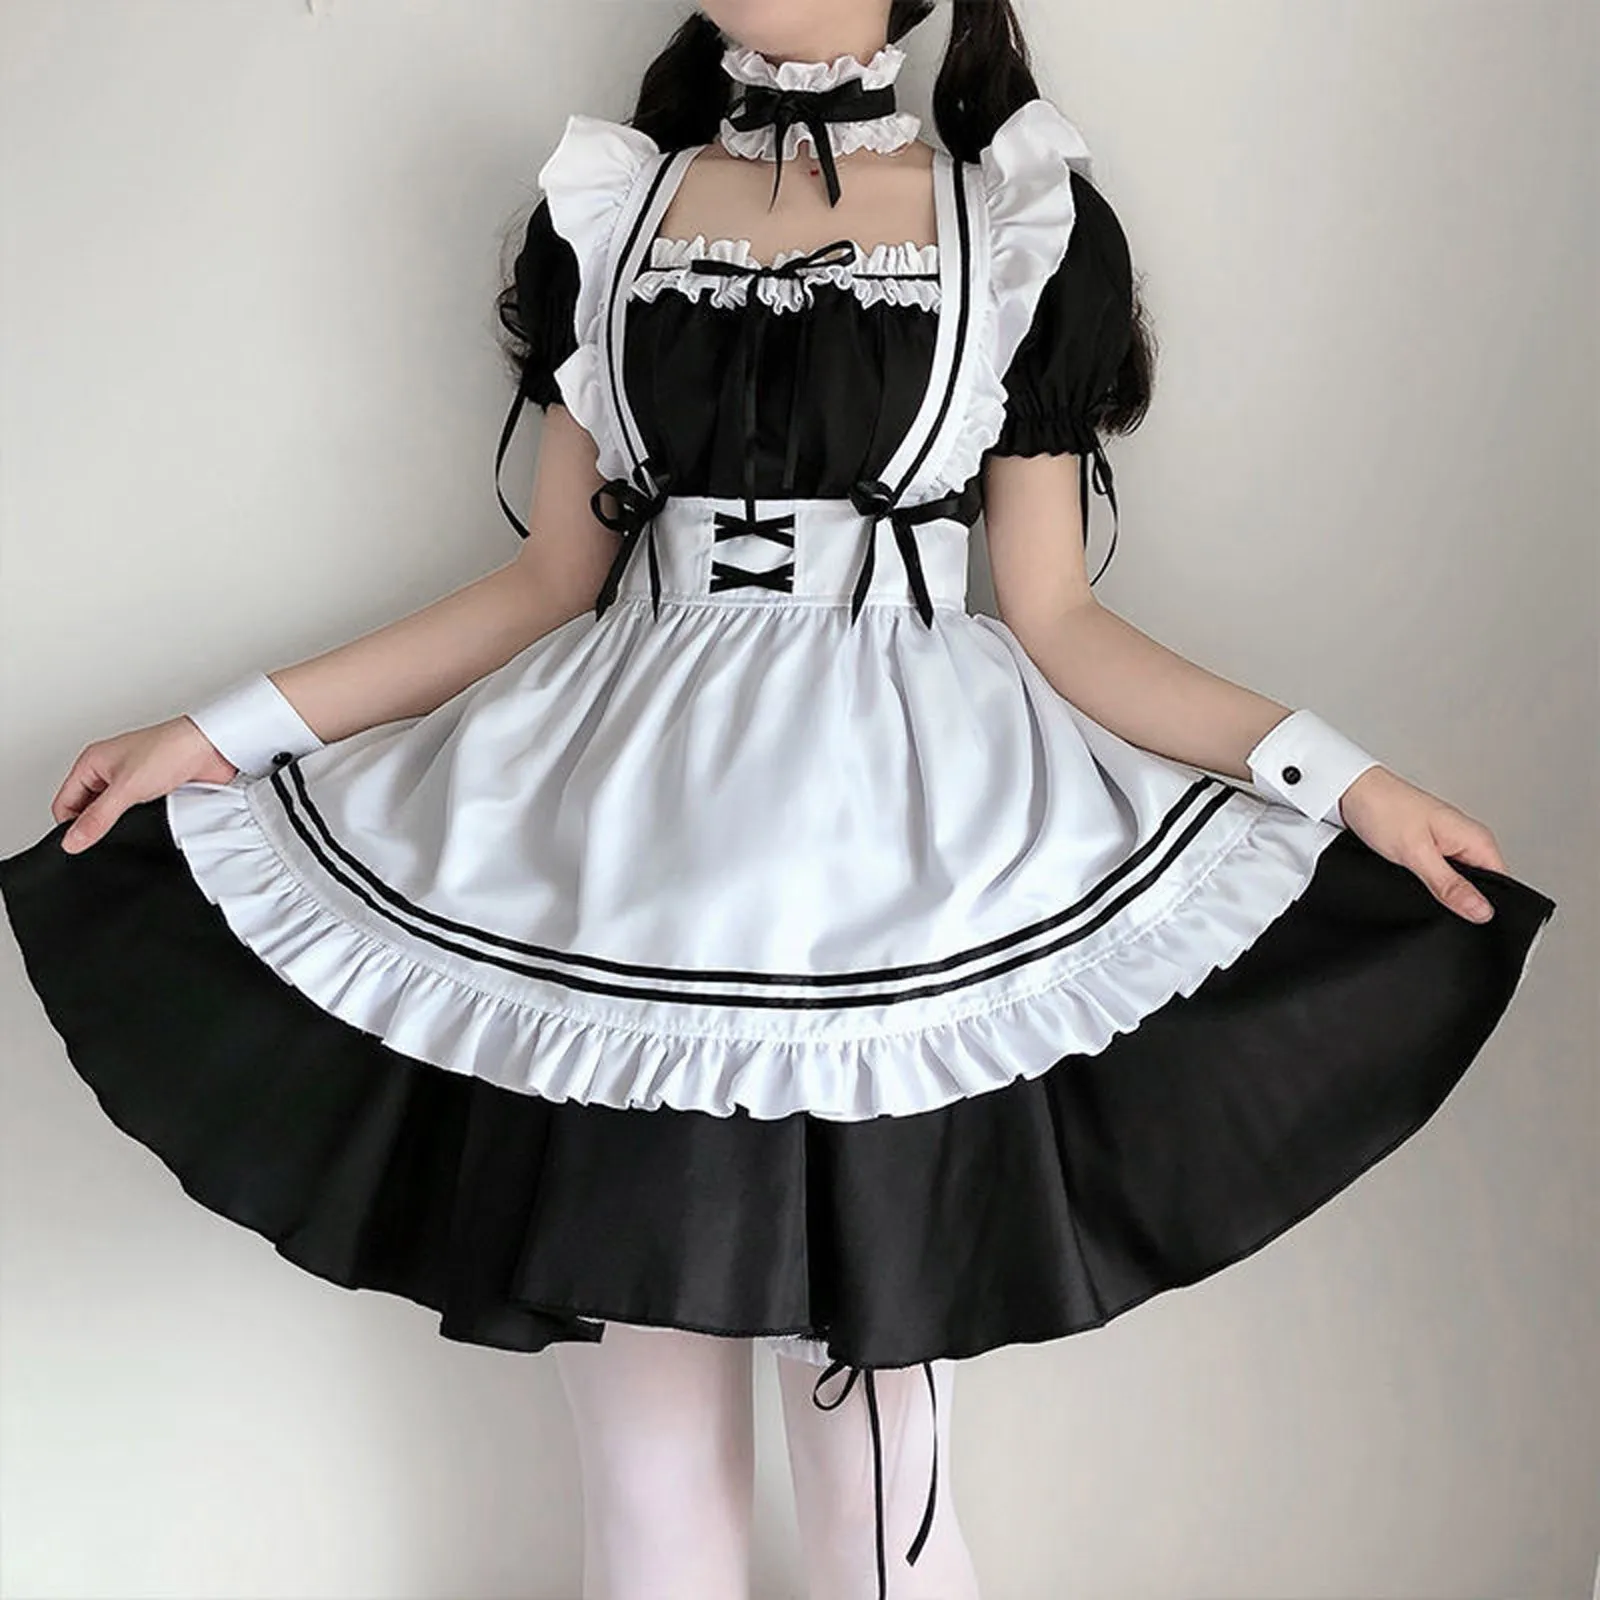 2021 schwarz Nette Lolita Maid Kostüme Mädchen Frauen Schöne Maid Cosplay Kostüm Animation Zeigen Japanischen Outfit Kleid Kleidung| | - AliExpress